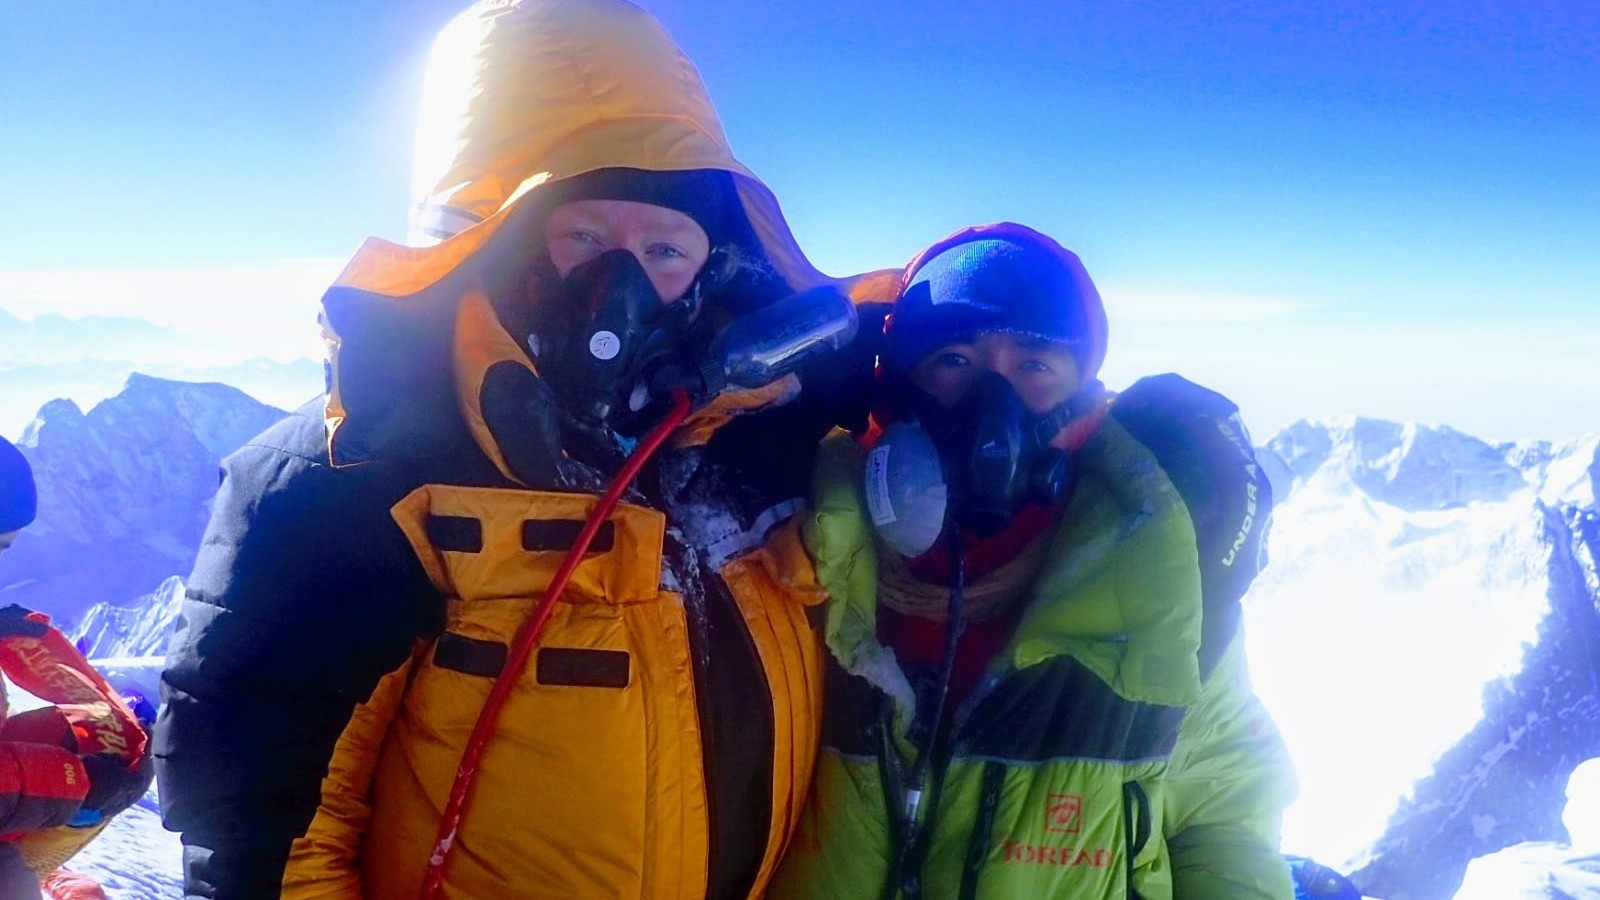 Daphne de Jong (29) bereikt top Mount Everest